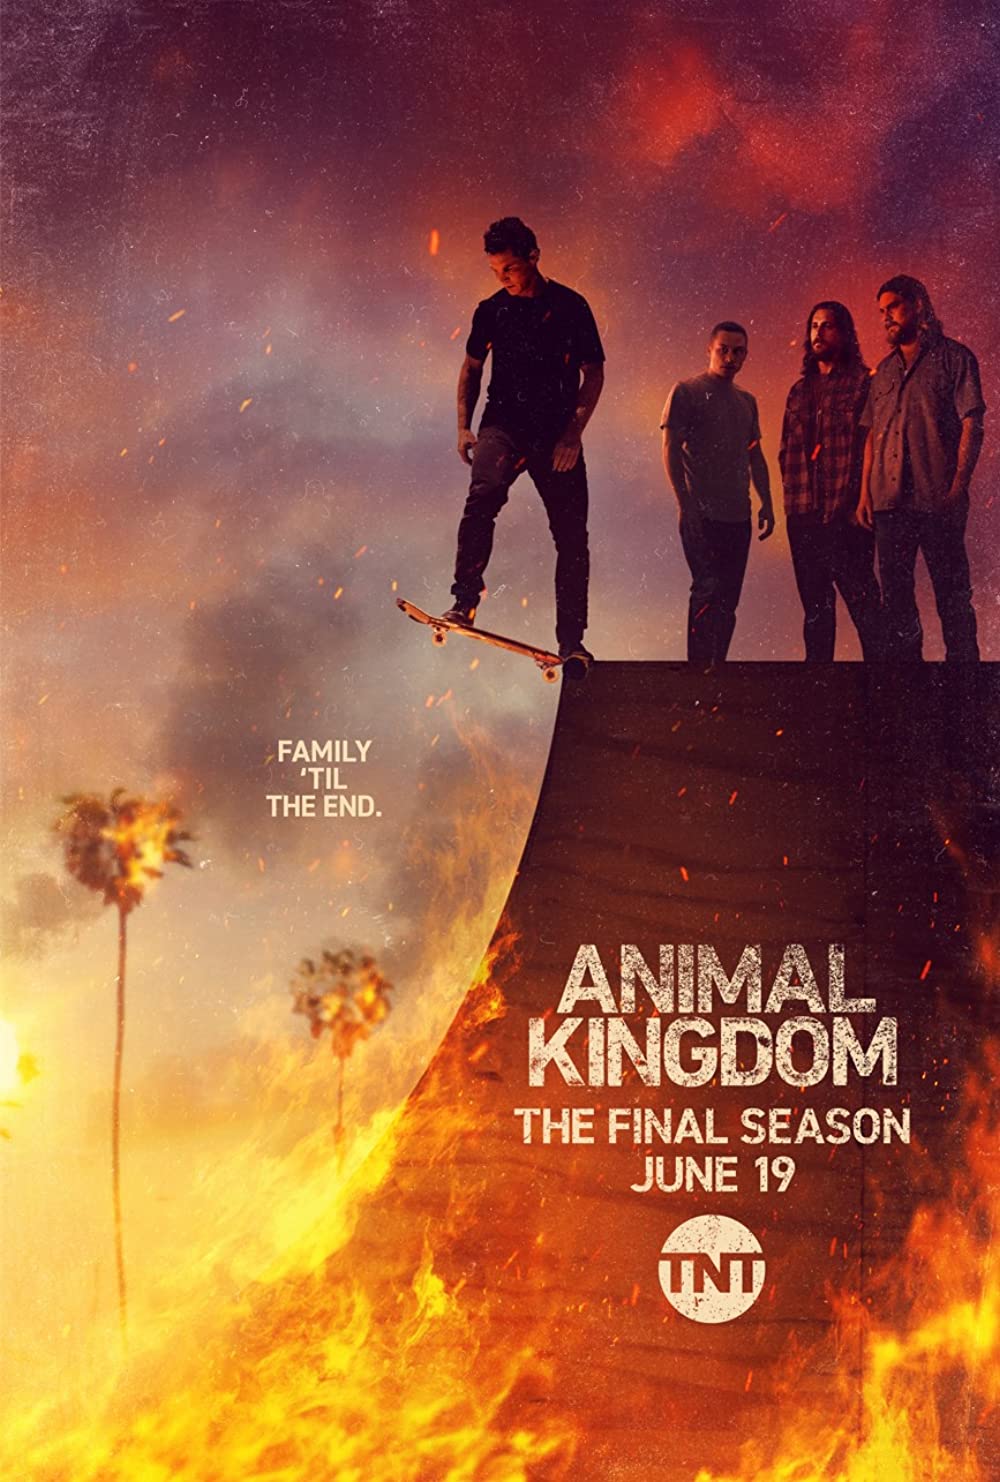 ดูหนังออนไลน์ Animal Kingdom Season 1 EP.10 แอนนิเมิล คิงด้อม ซีซั่น 1 ตอนที่ 10 (ซับไทย)